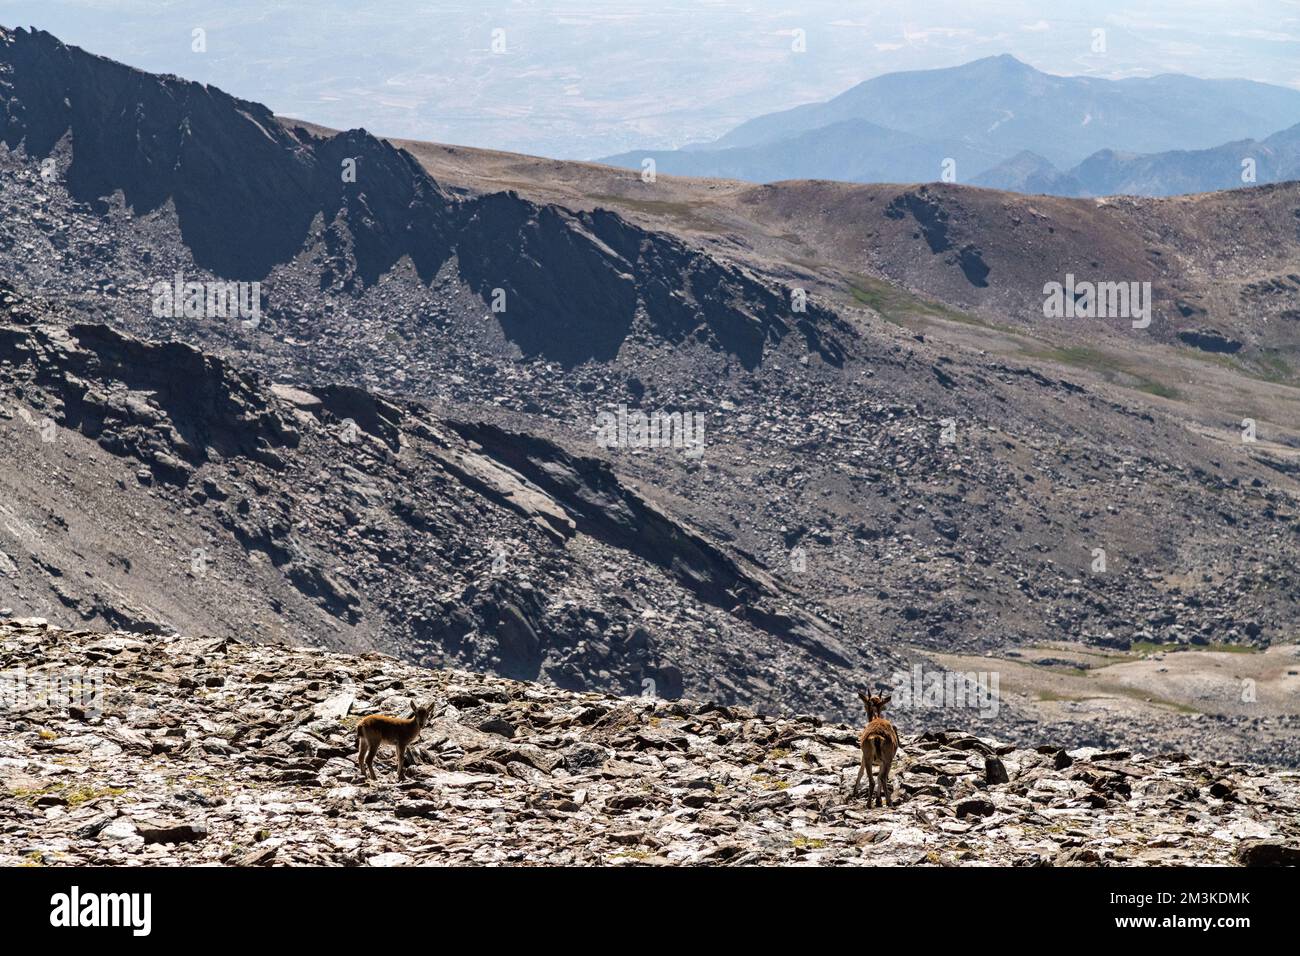 Une mère chèvre et son enfant explorant la chaîne montagneuse rocheuse de la Sierra Nevada en Andalousie, Espagne Banque D'Images